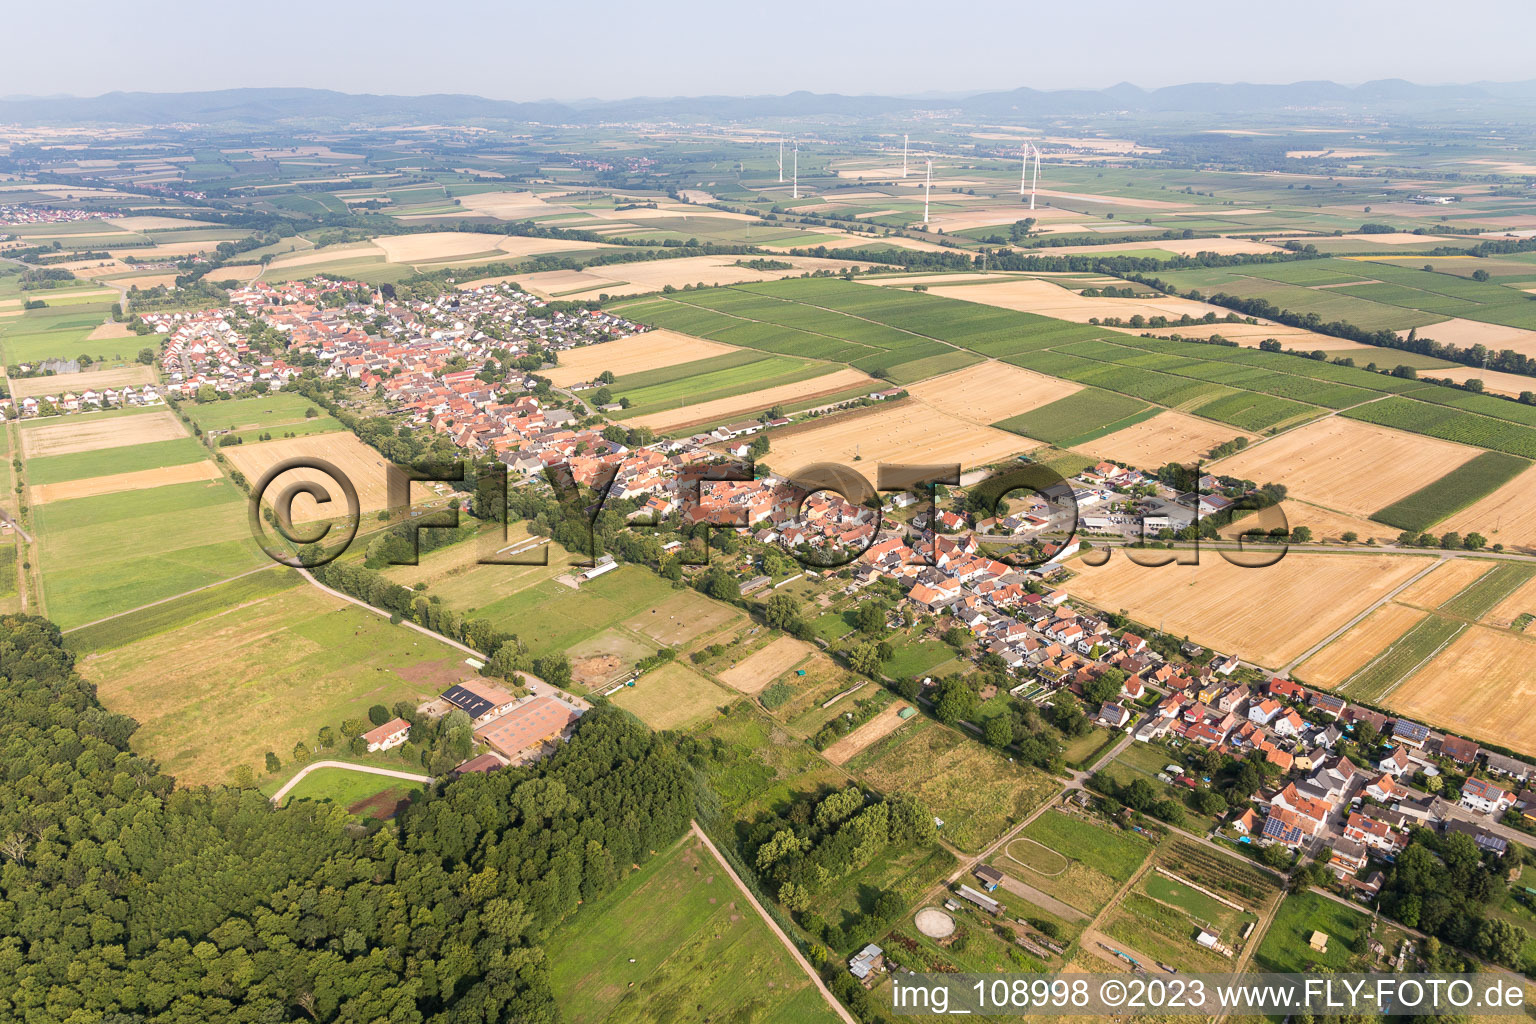 Vue oblique de Freckenfeld dans le département Rhénanie-Palatinat, Allemagne